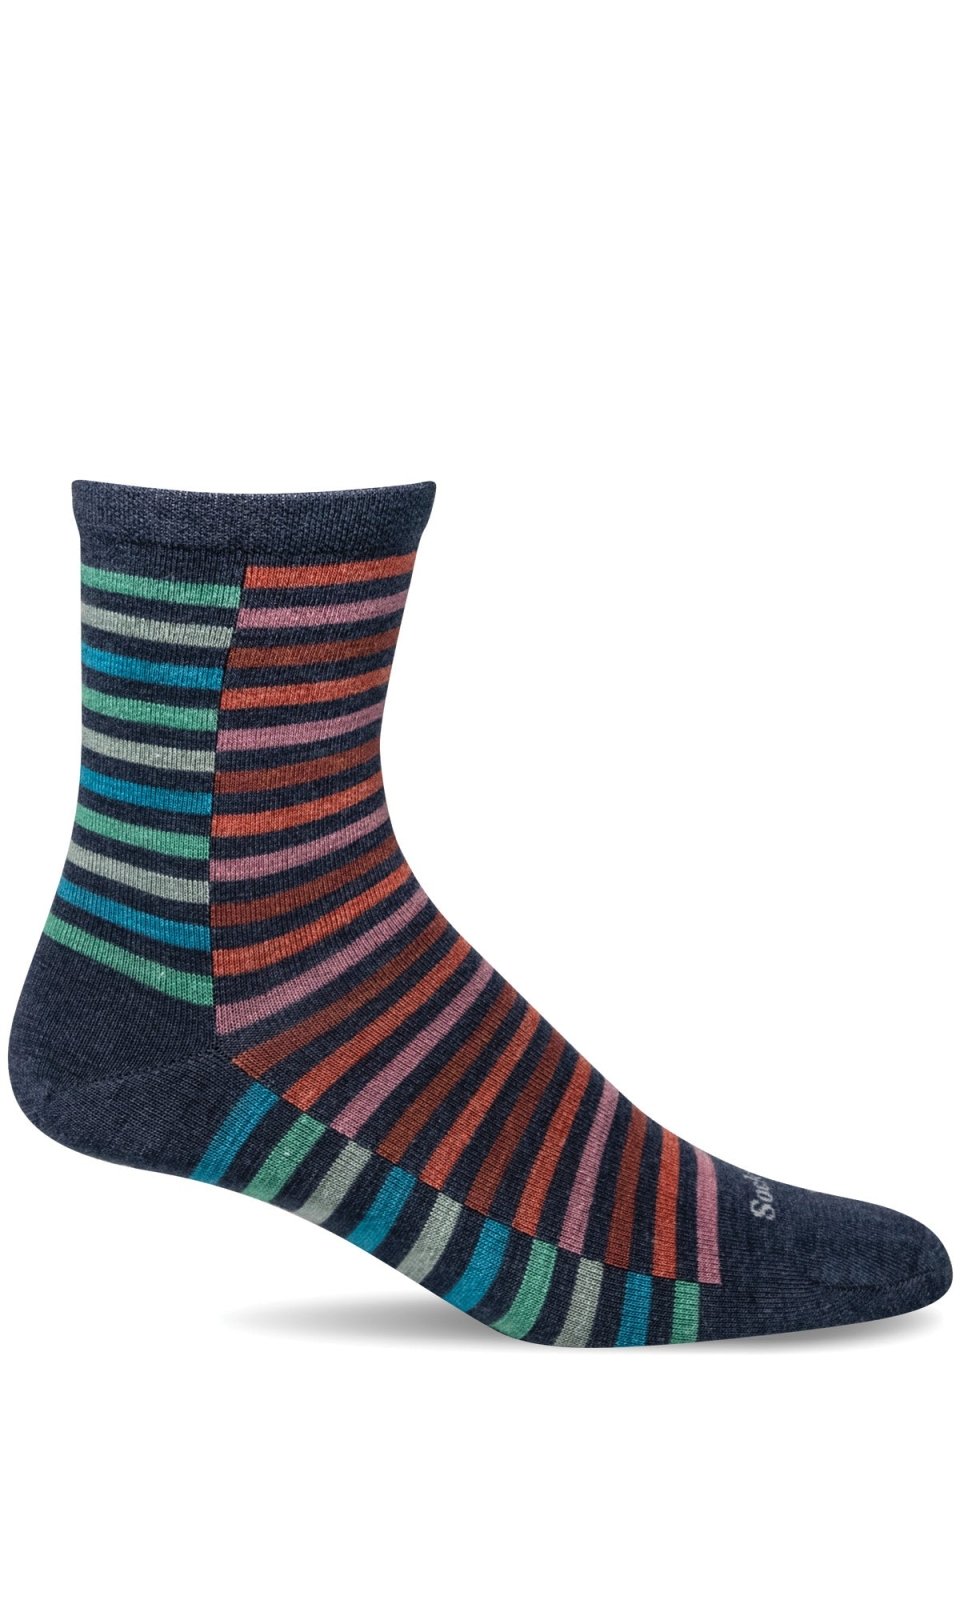 Sockwell Zip | Essential Comfort Socks (Women's) - Denim